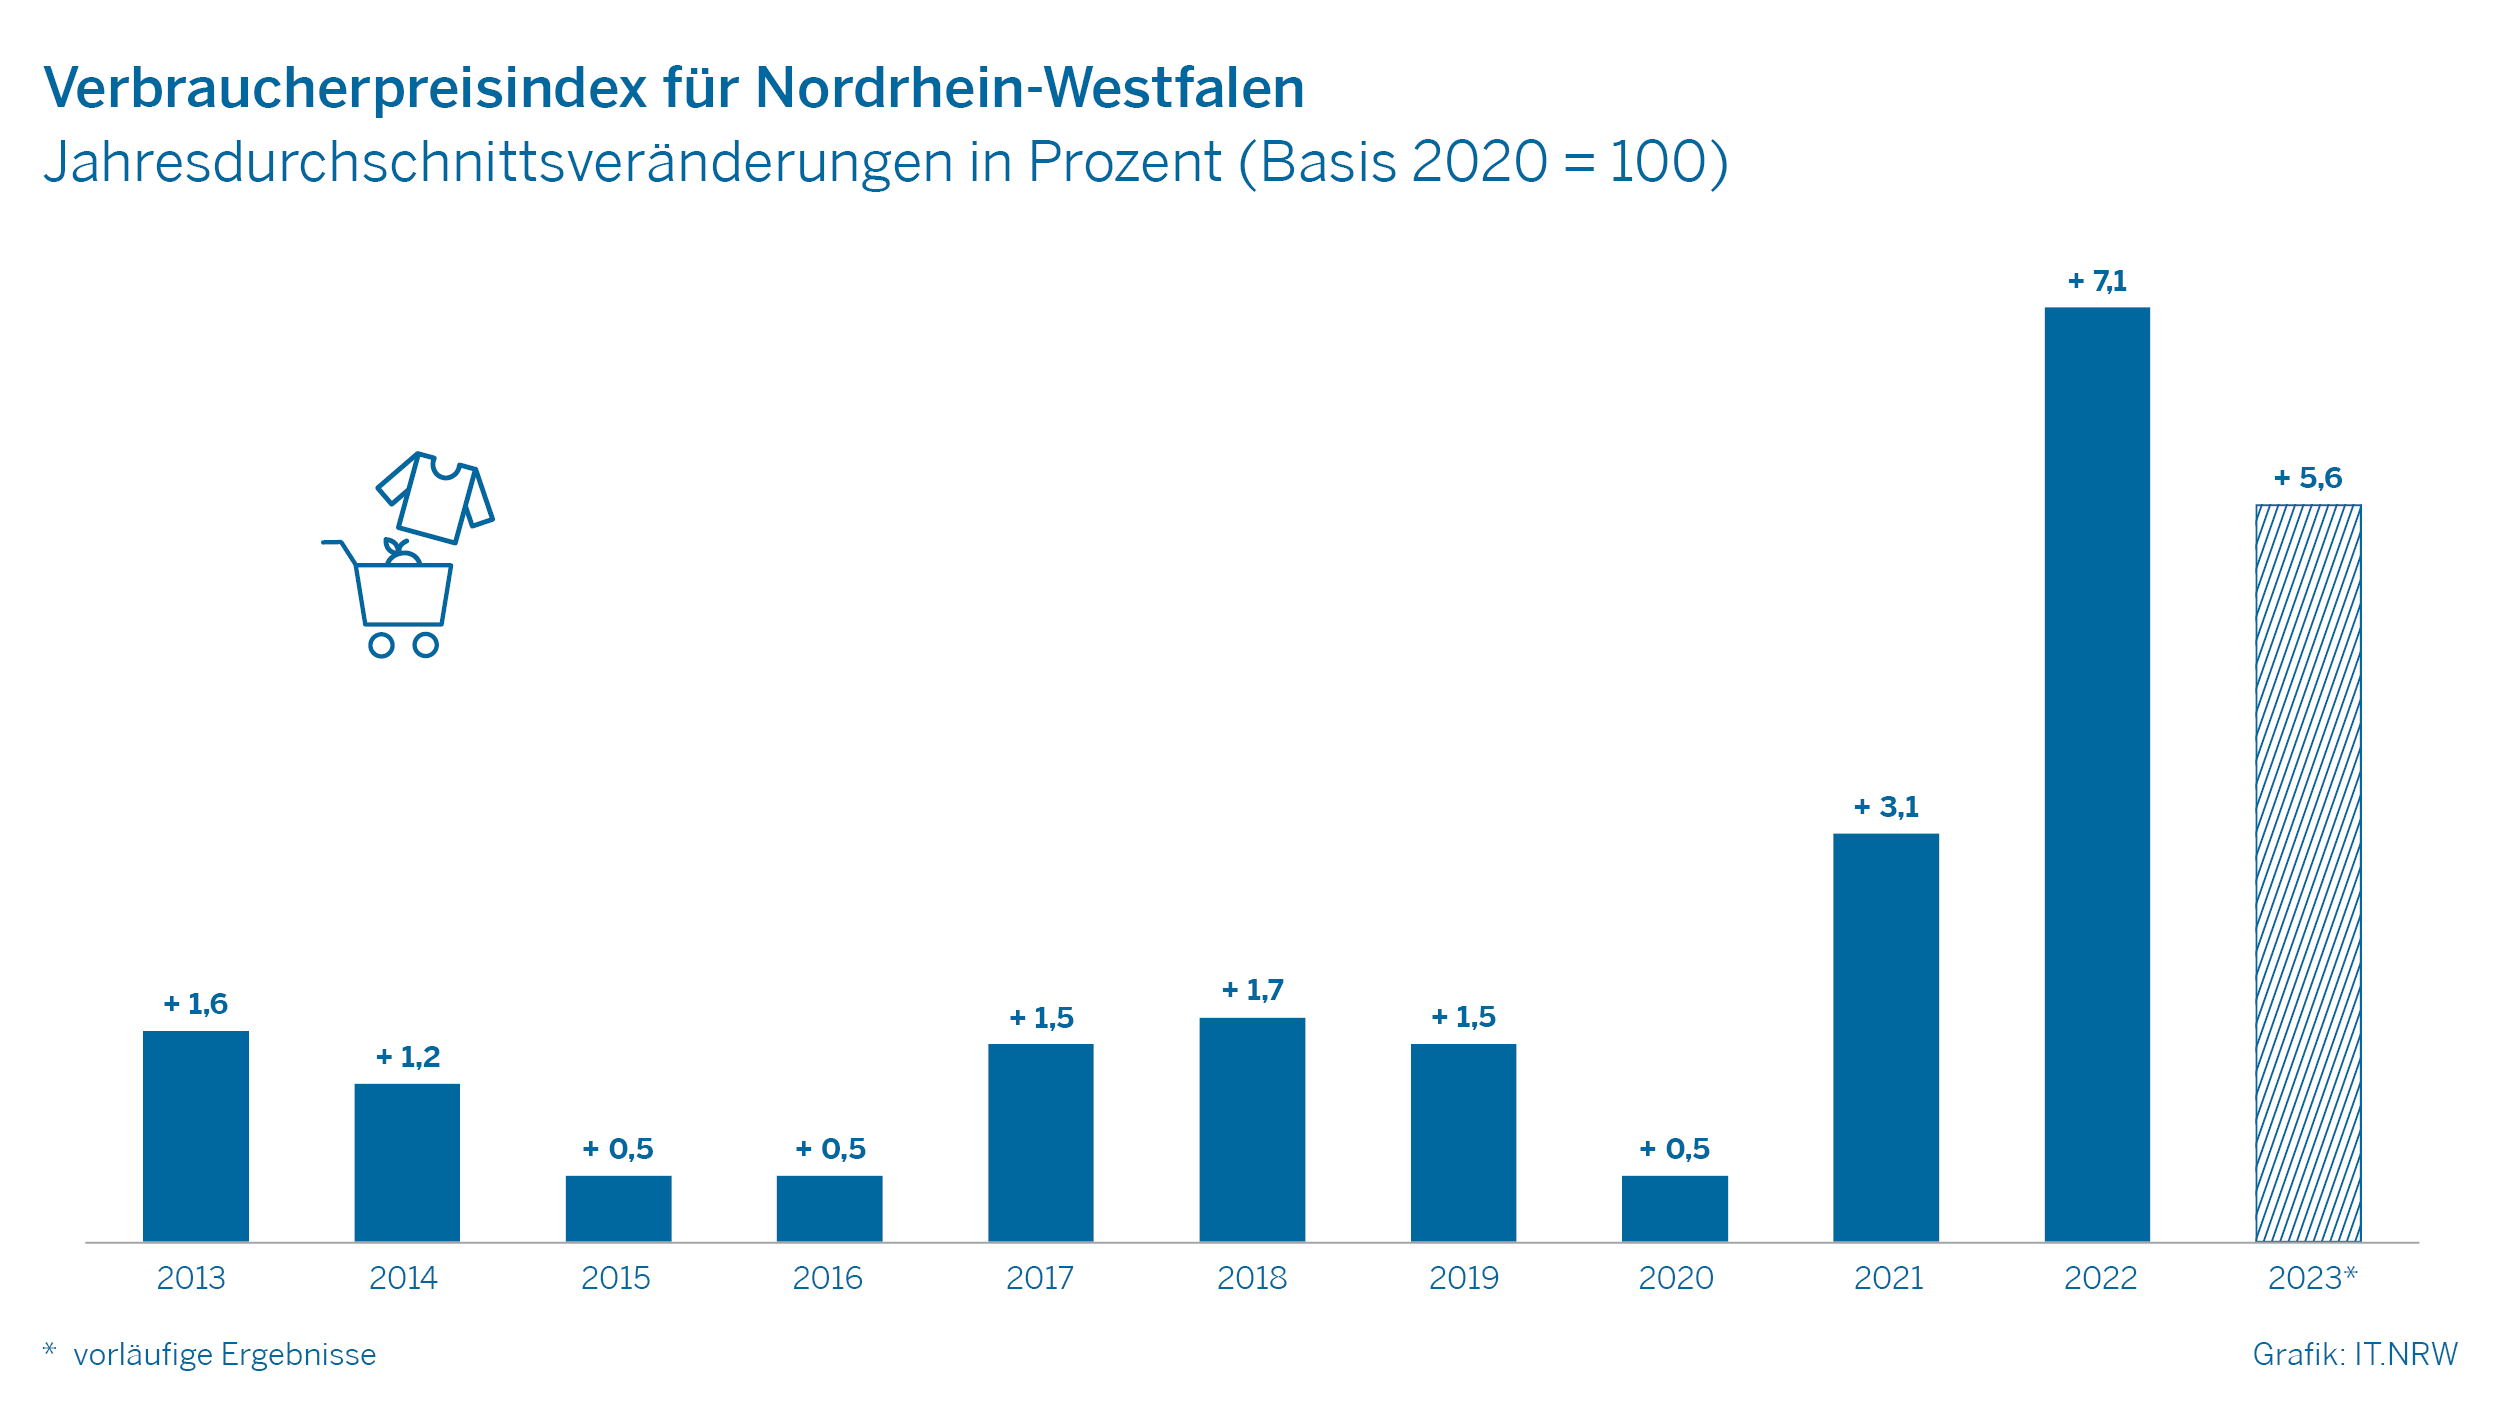 Verbraucherpreisindex für Nordrhein-Westfalen - Jahresdurchschnittsveränderungen